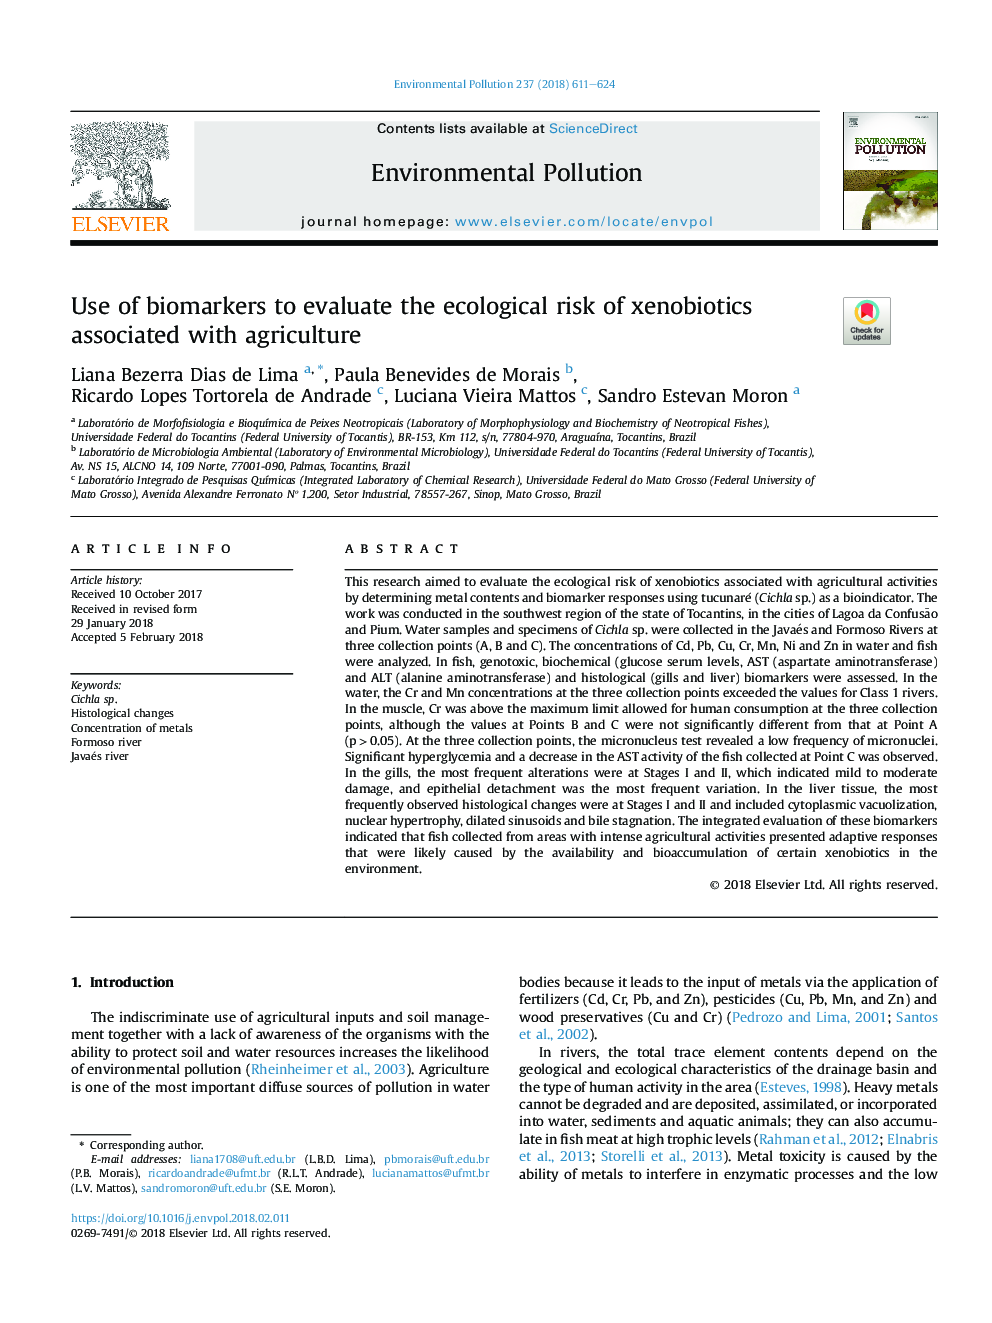 استفاده از نشانگرهای زیستی برای ارزیابی خطر زیست محیطی زبو بیوتیک های مرتبط با کشاورزی 